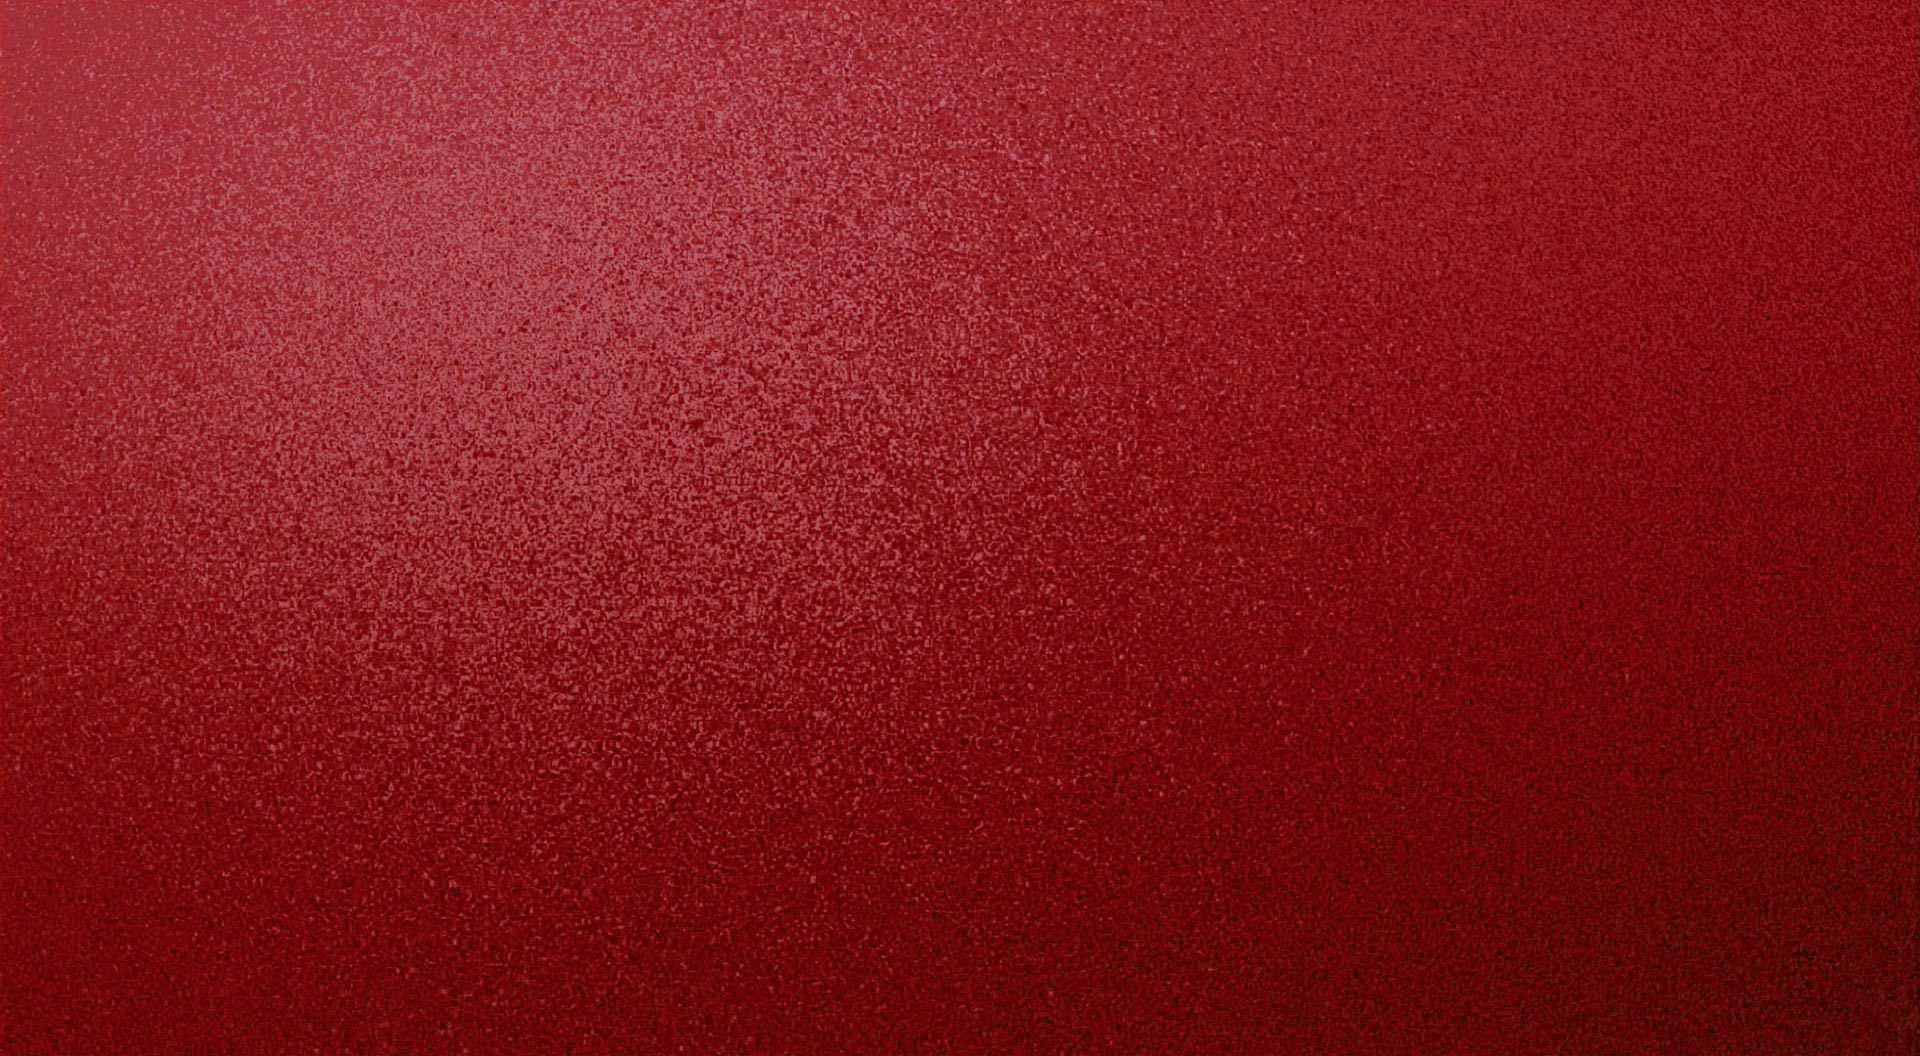 Red iPhone Wallpaper 78954 Best HD Wallpaper. Wallpaiper